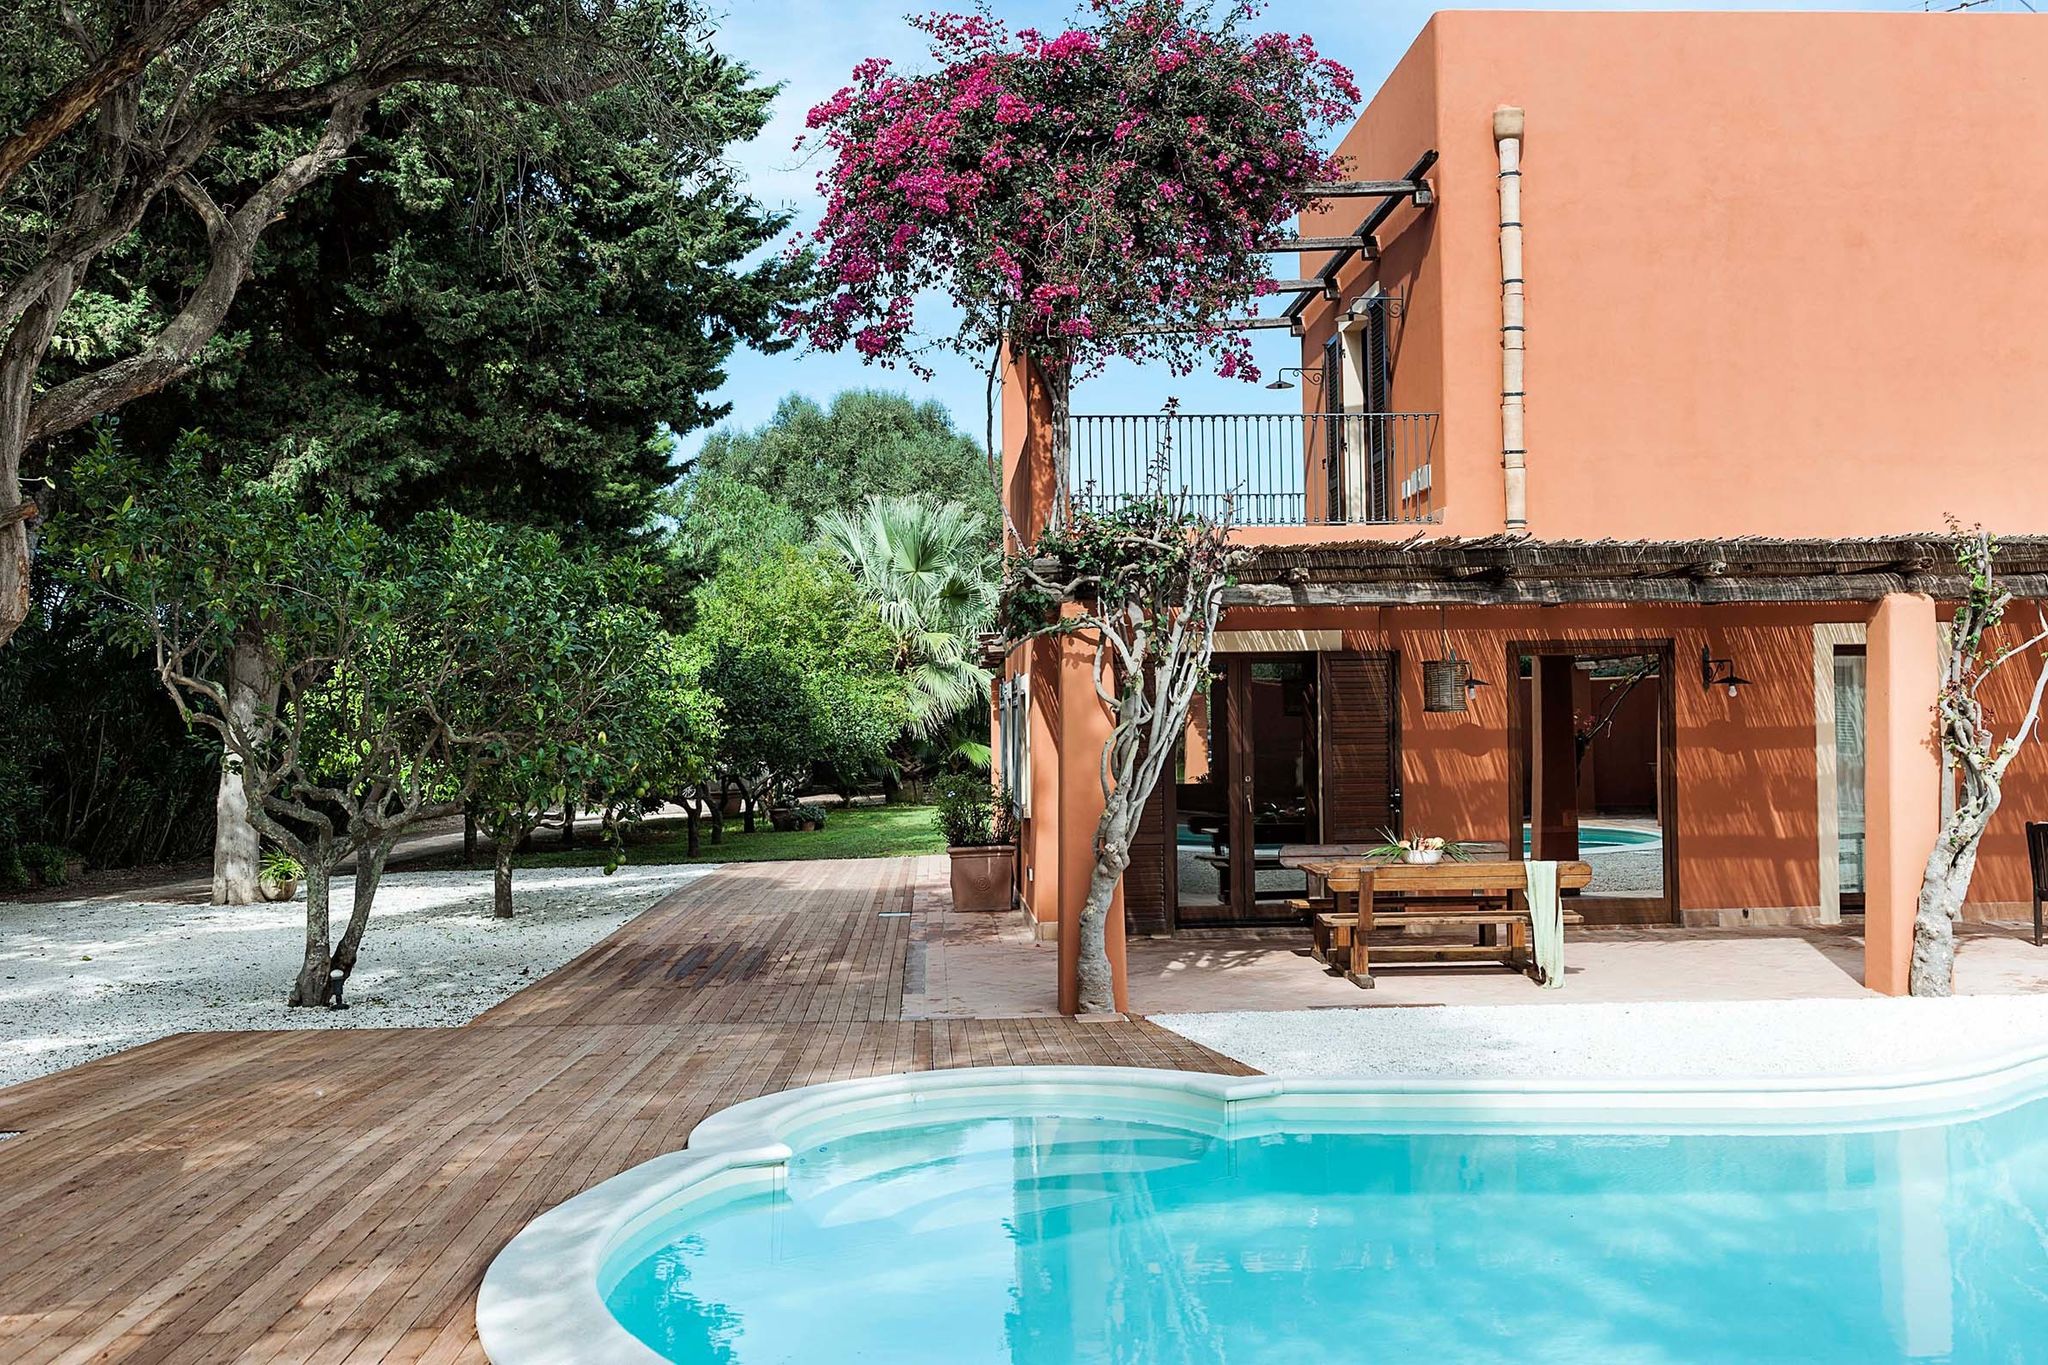 Fraaie villa met zwembad, gelegen in de omgeving van Marsala, een stadje aan zee